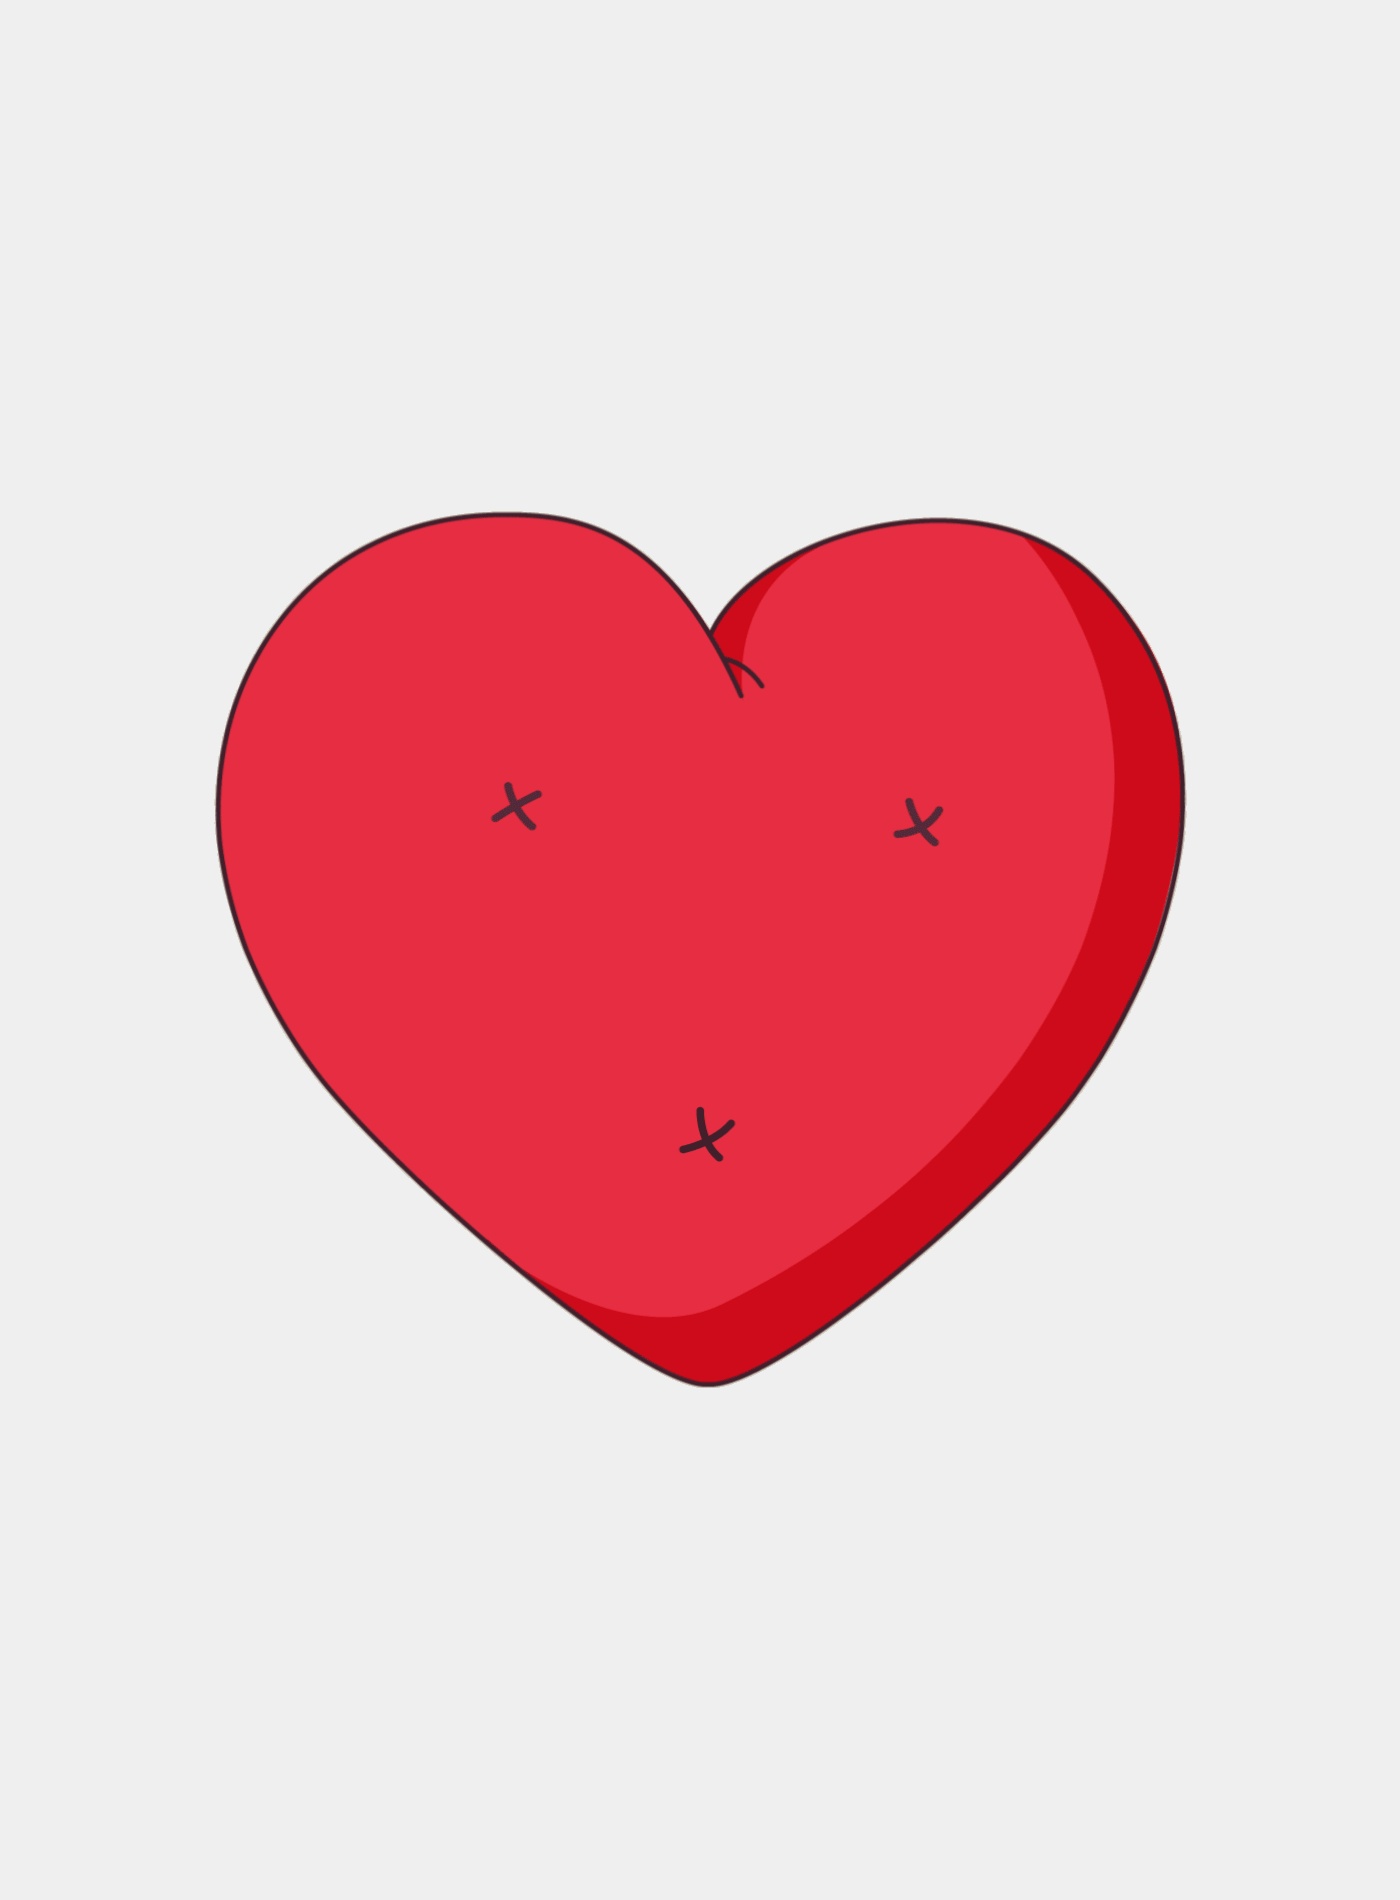 Как сделать анимацию сердечек в телеграмме фото 68